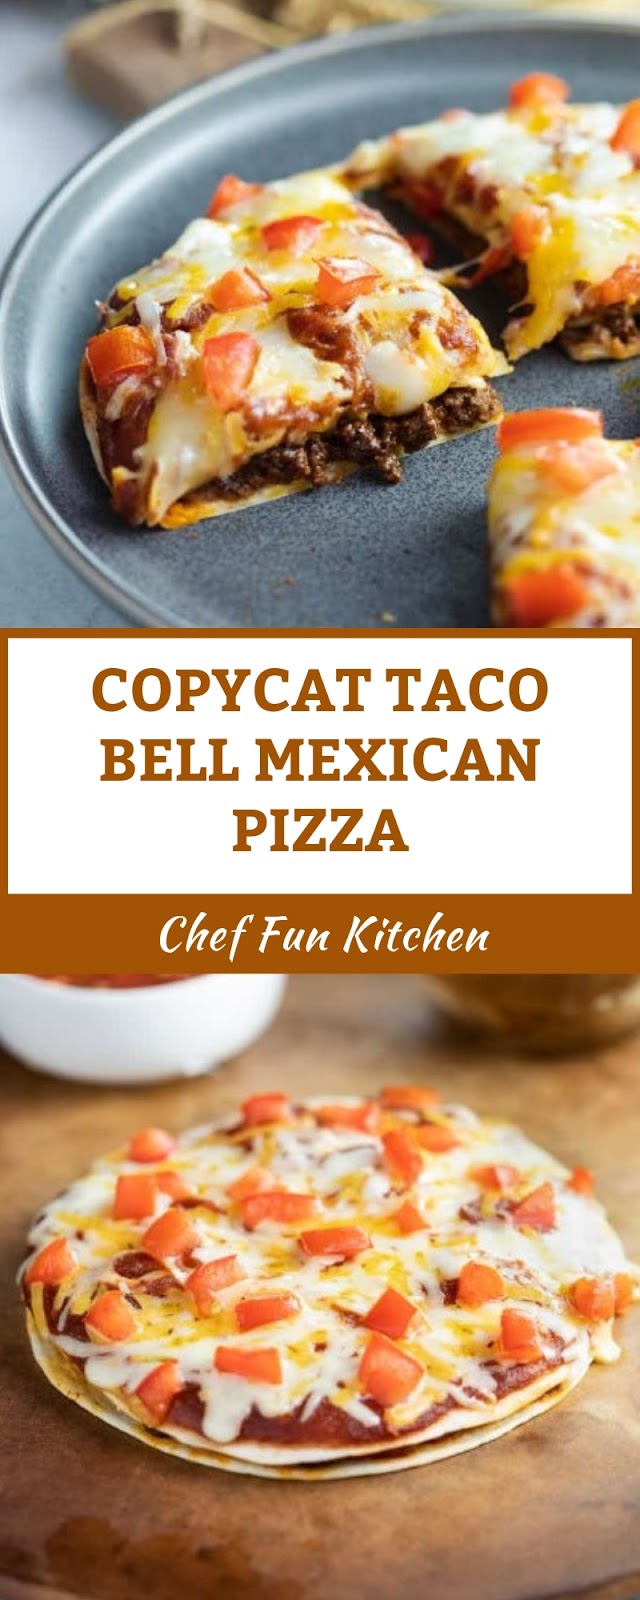 COPYCAT TACO BELL MEXICAN PIZZA